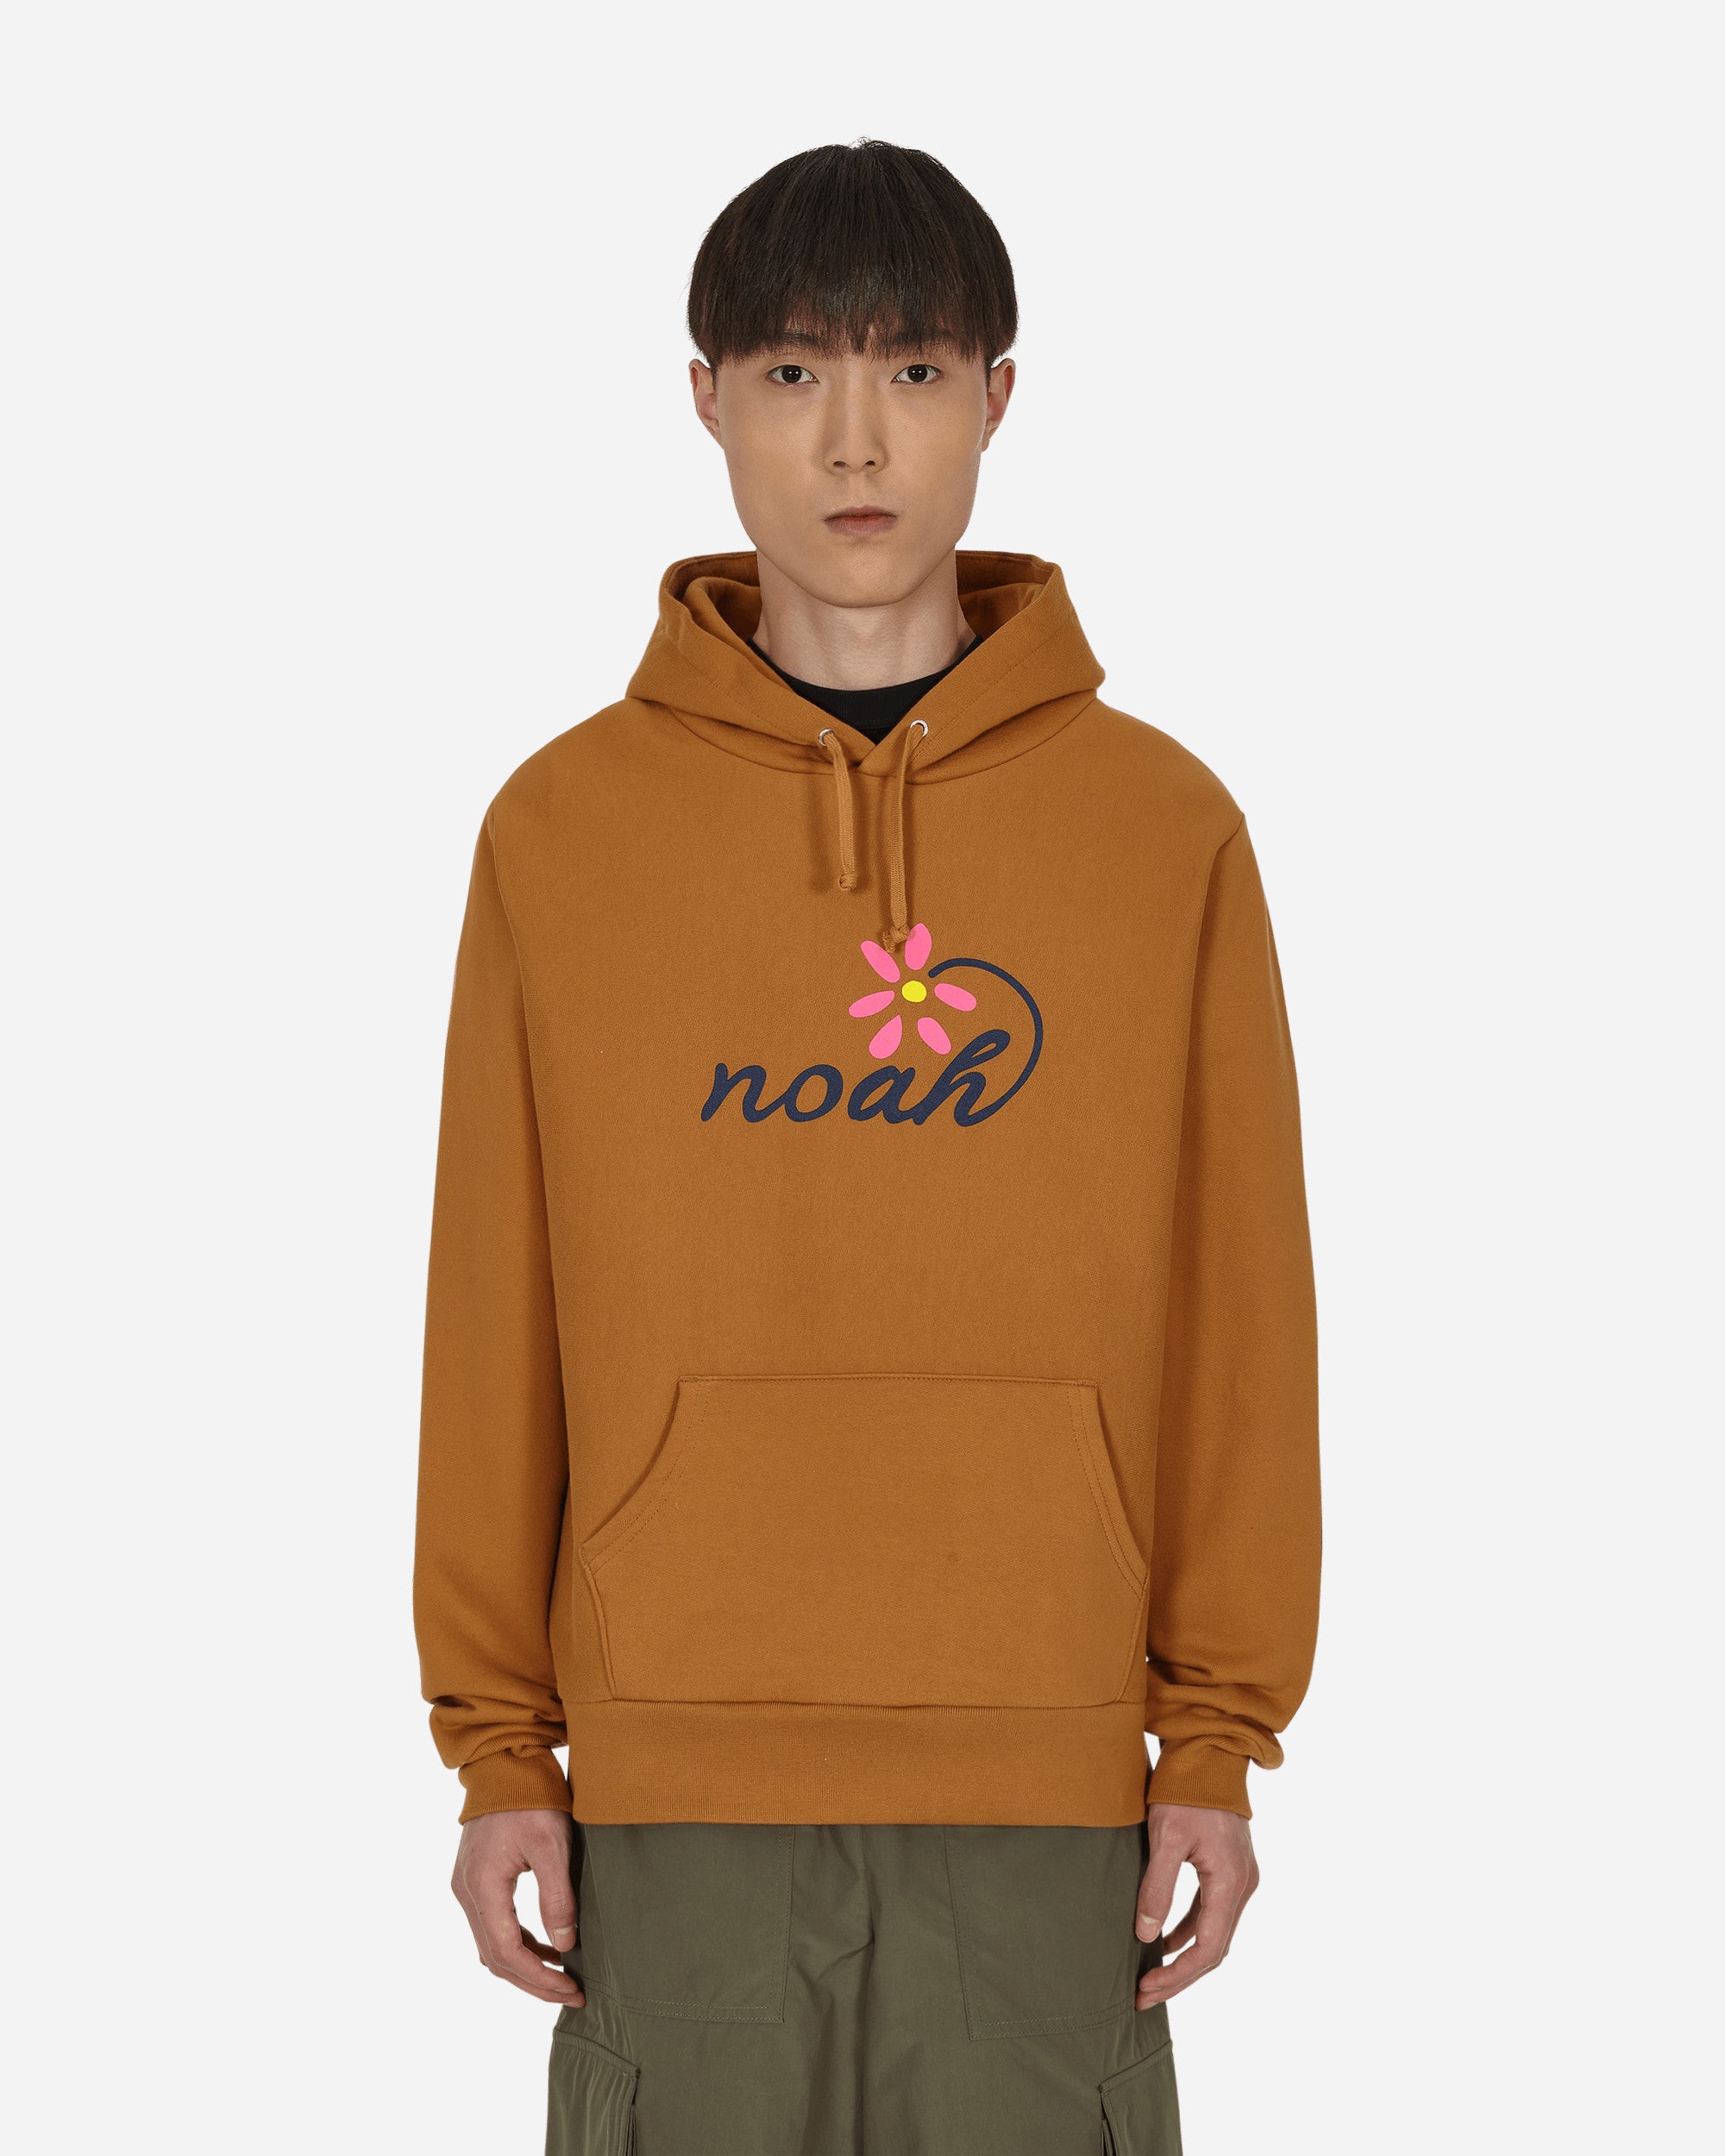 Noah Florist Hooded Sweatshirt Brown - Slam Jam® Official Store